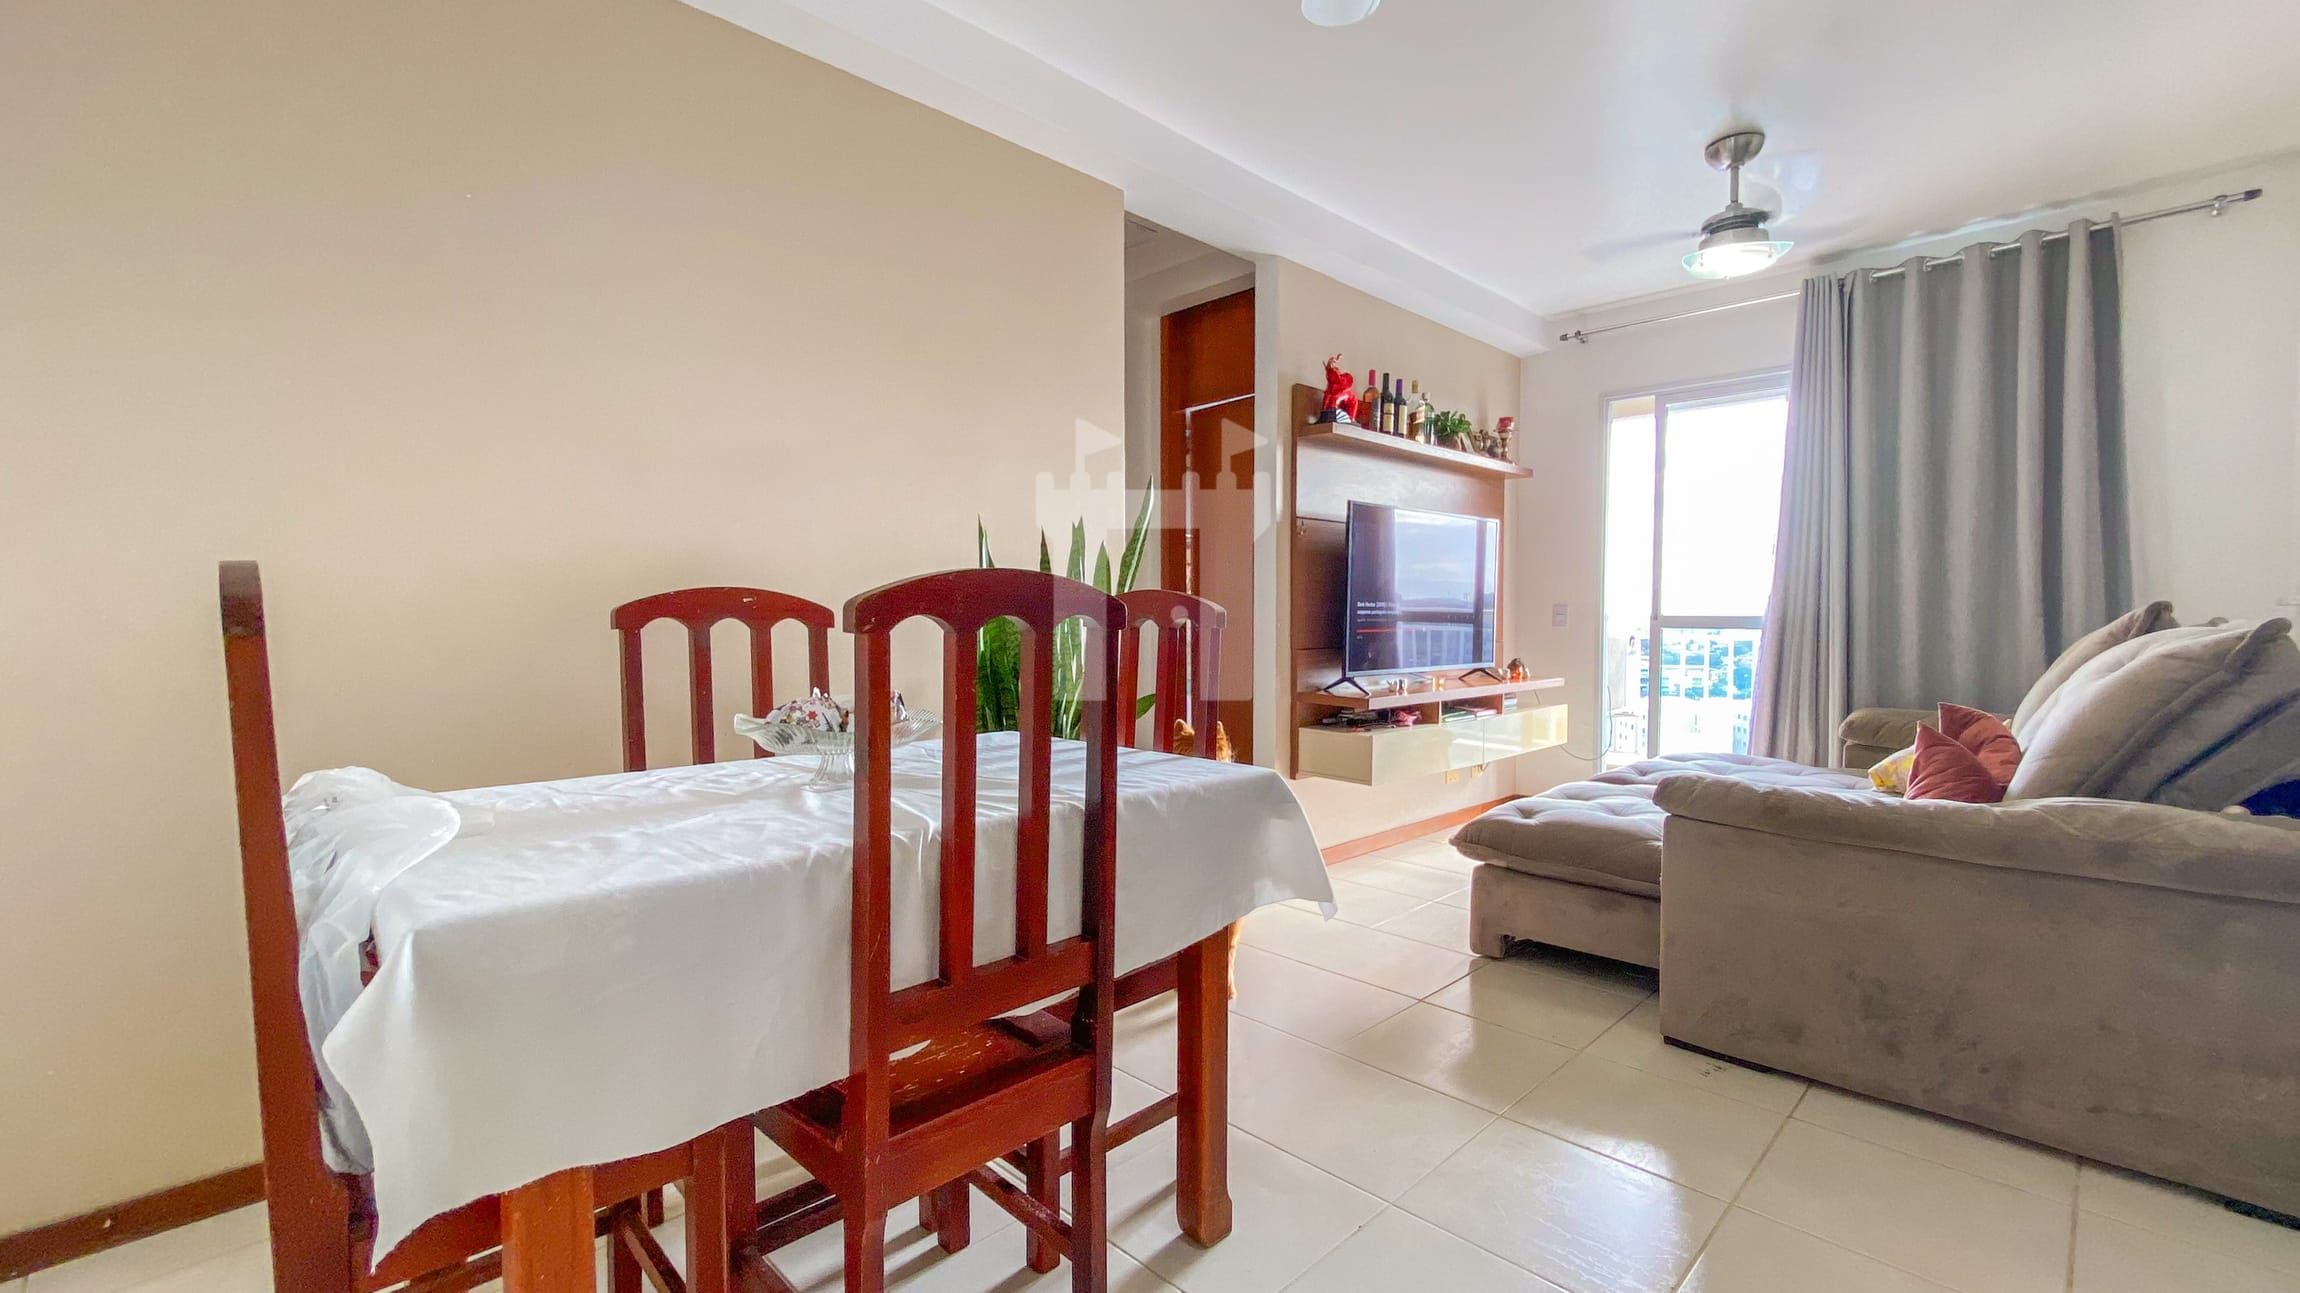 Apartamento em Morada de Laranjeiras, Serra/ES de 58m² 2 quartos à venda por R$ 329.000,00